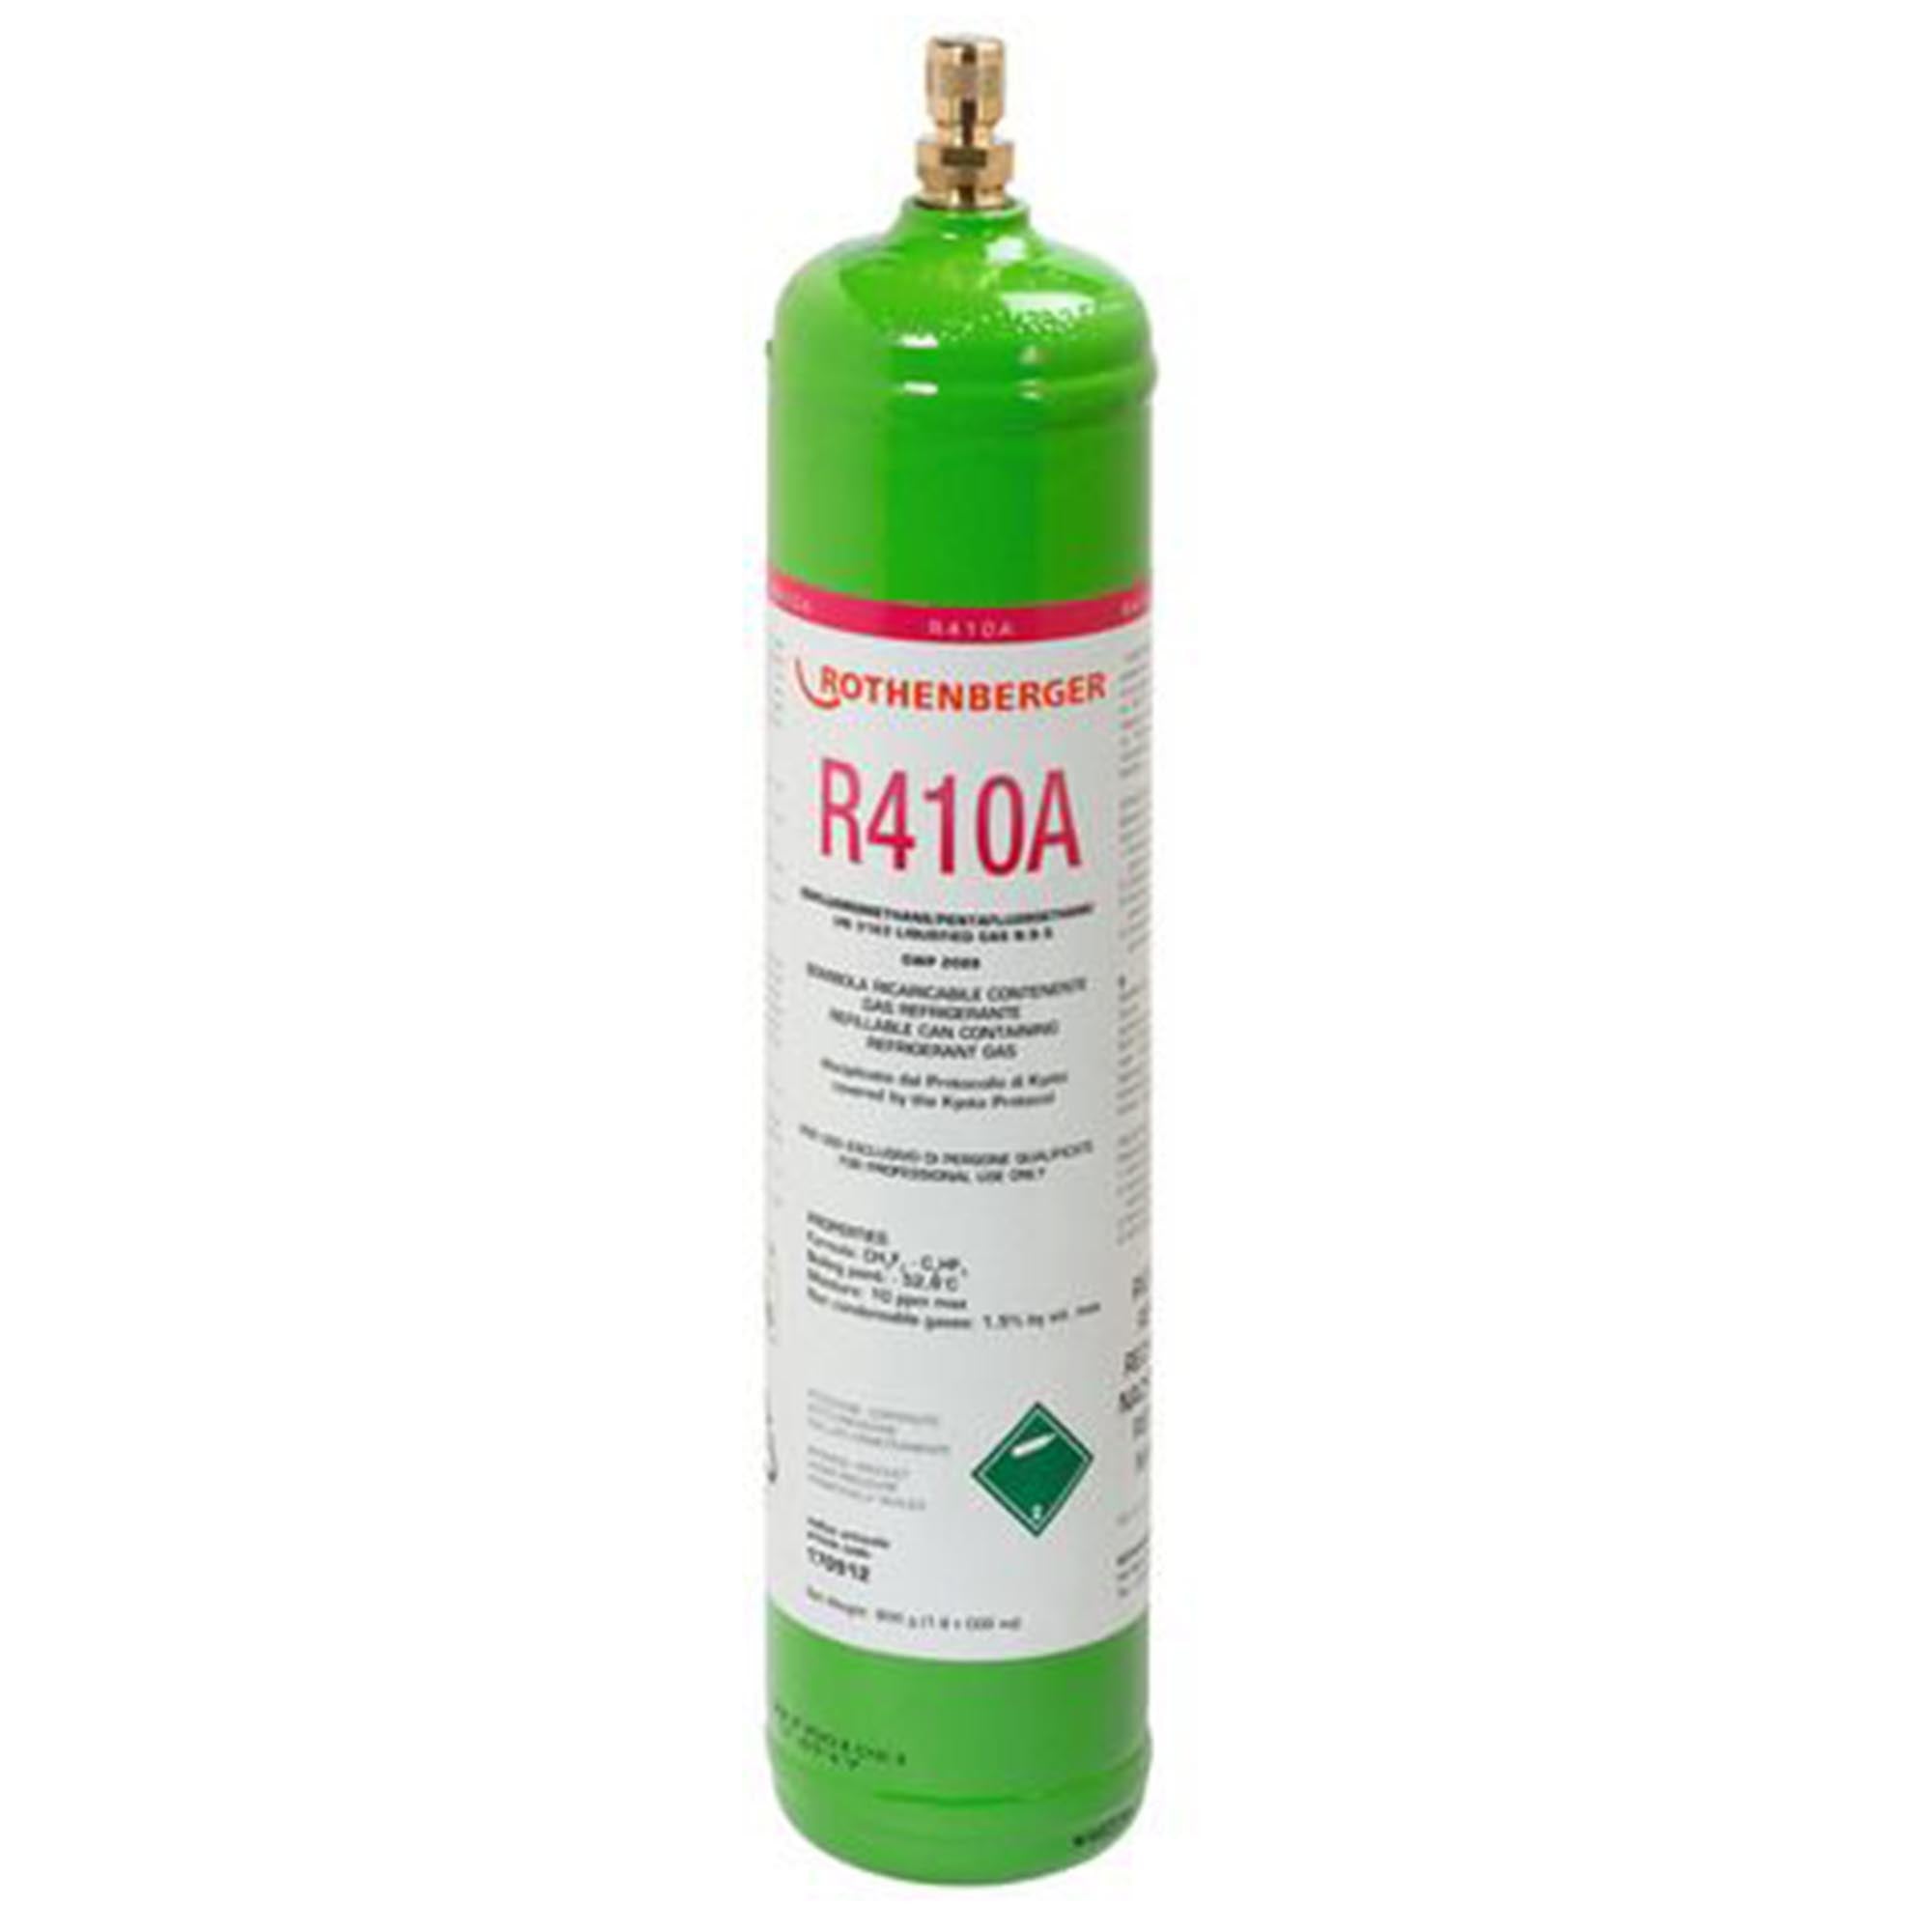 Gas refrigerante Rothenberger R410A